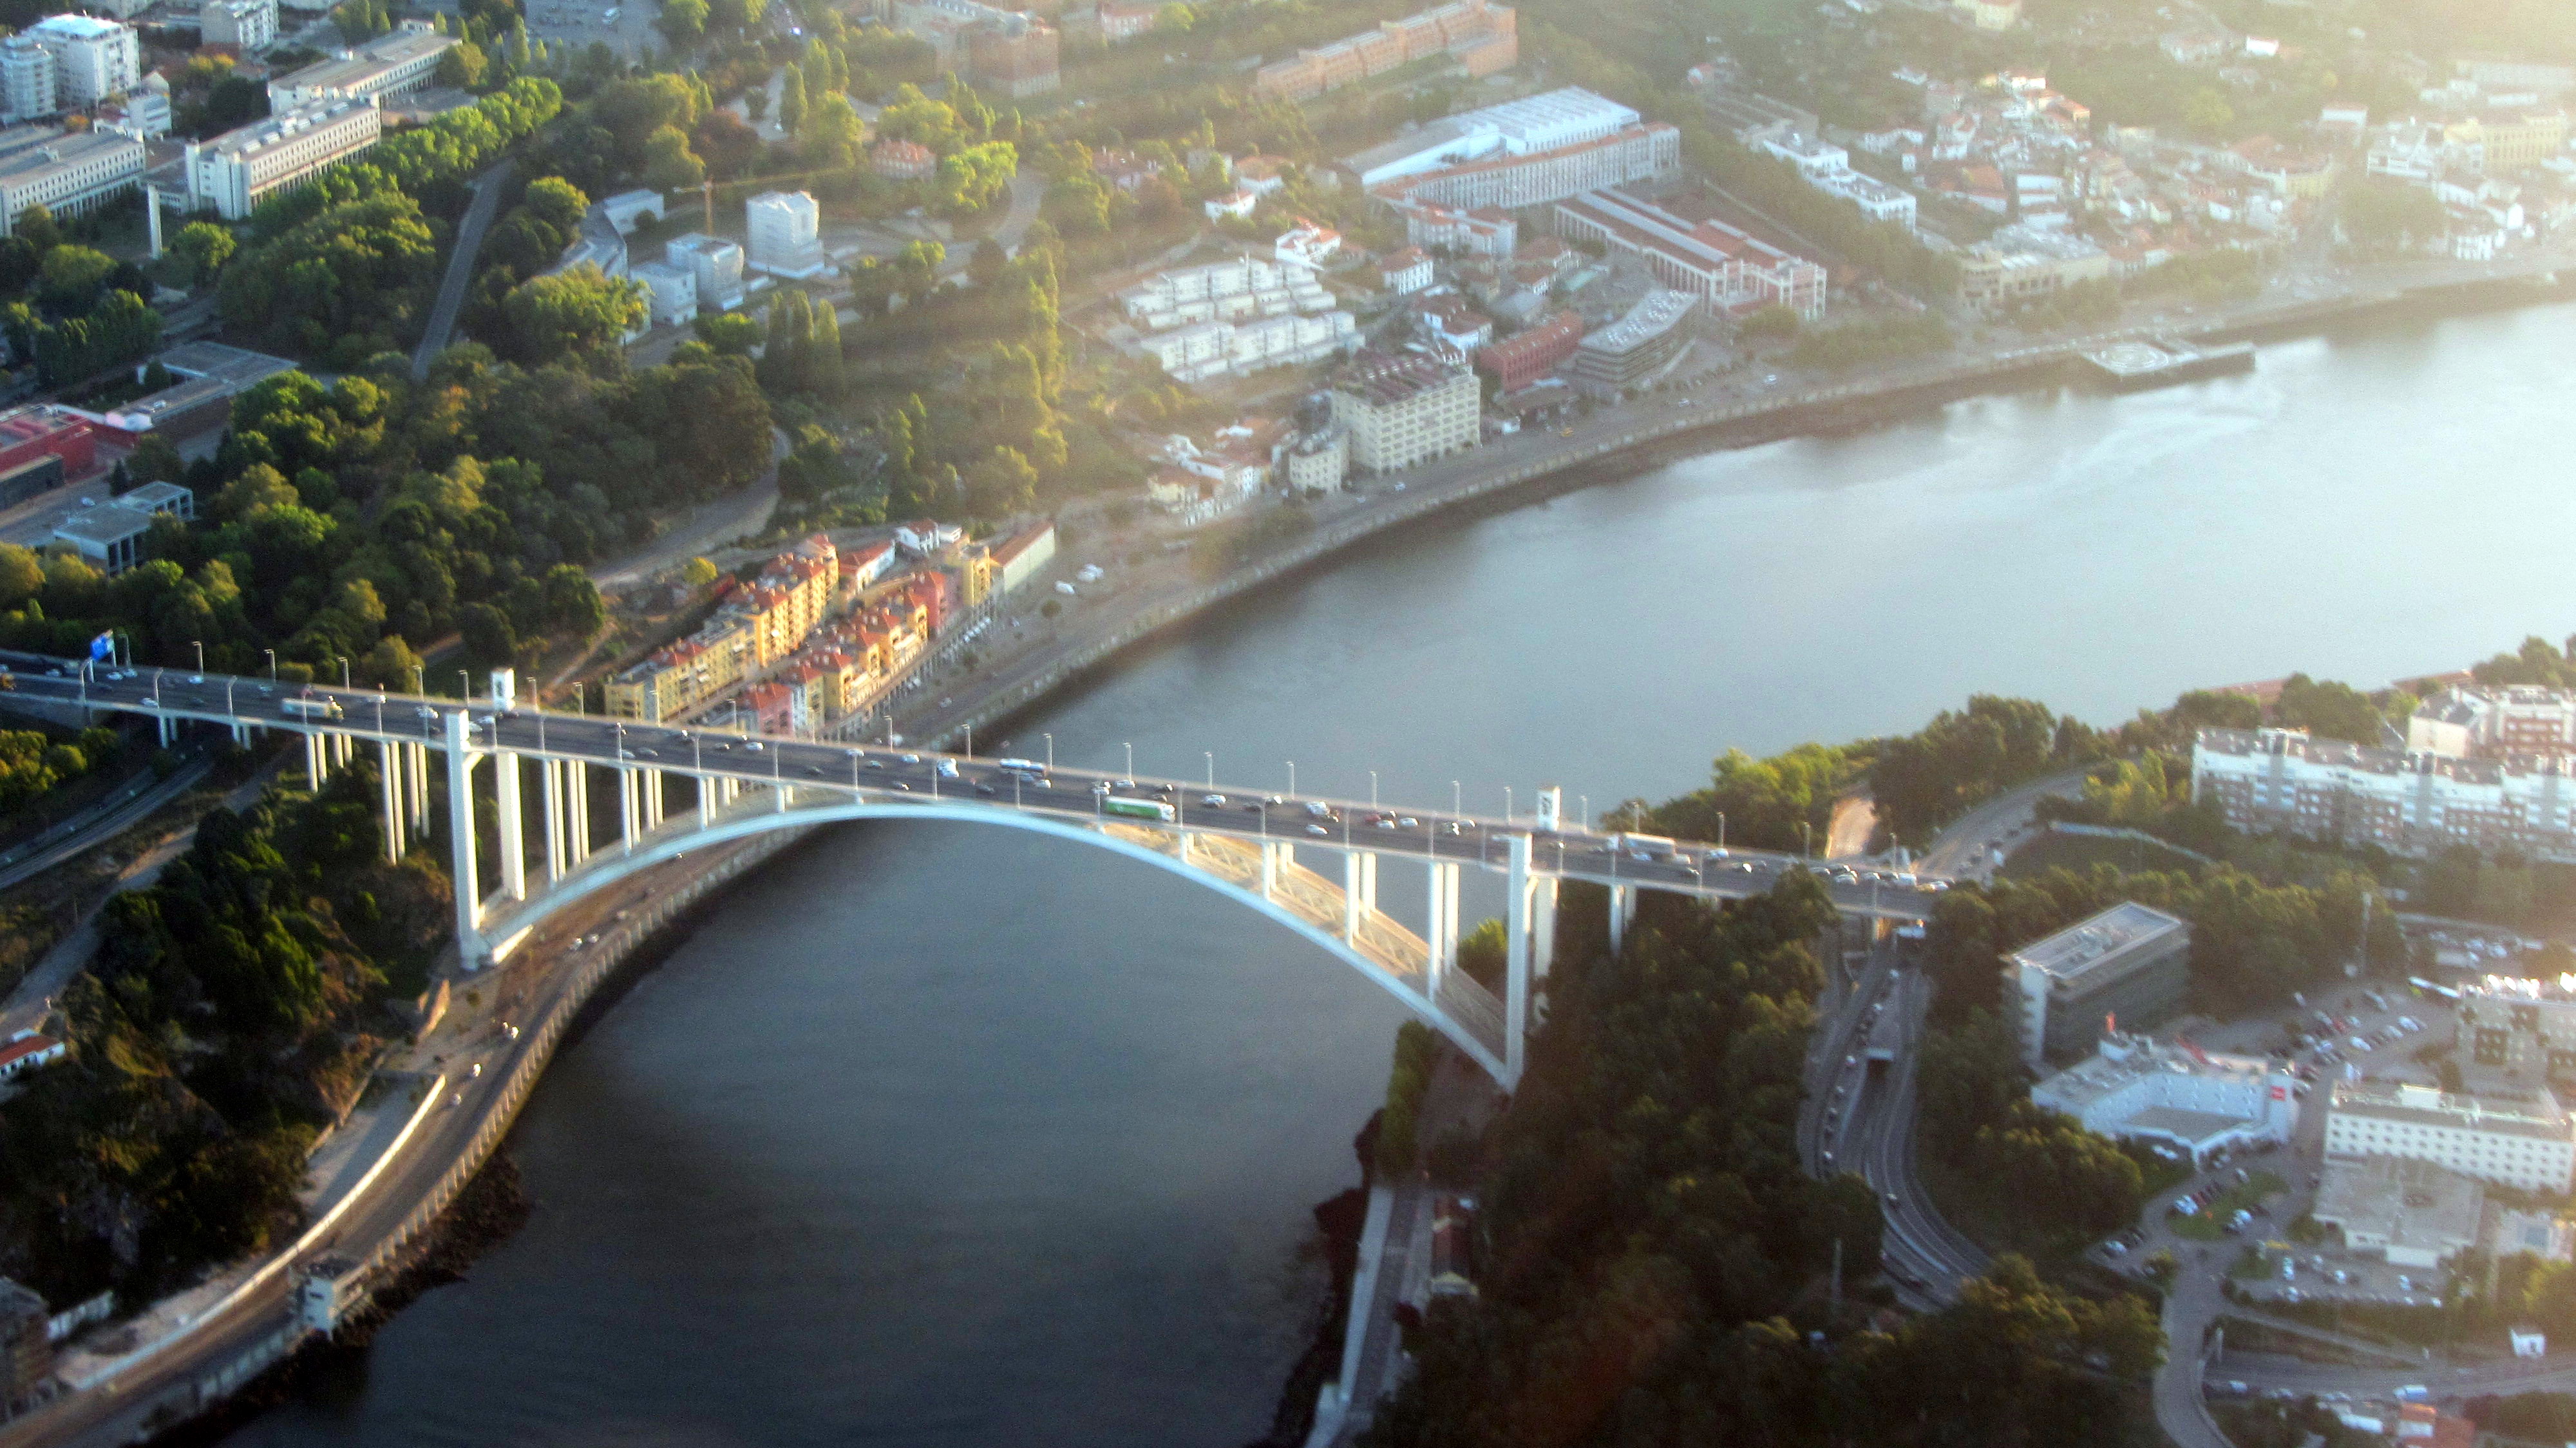 The A1 motorway Porto bridge on the Douro